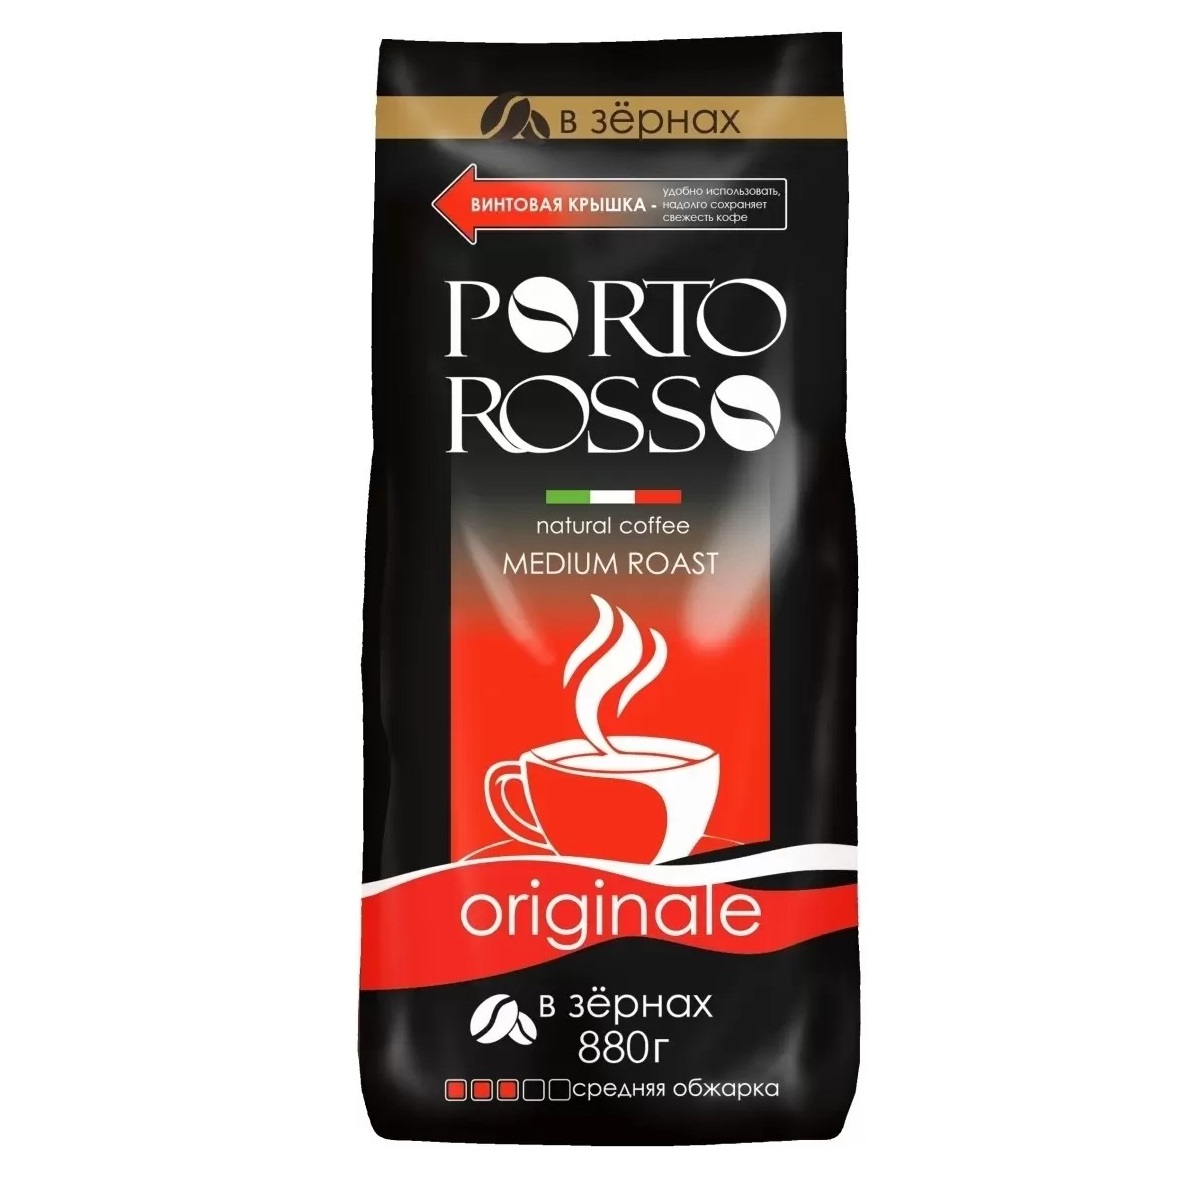 Кофе Porto Rosso в зернах Originale 880г кофе в зернах porto rosso speciale 440 г